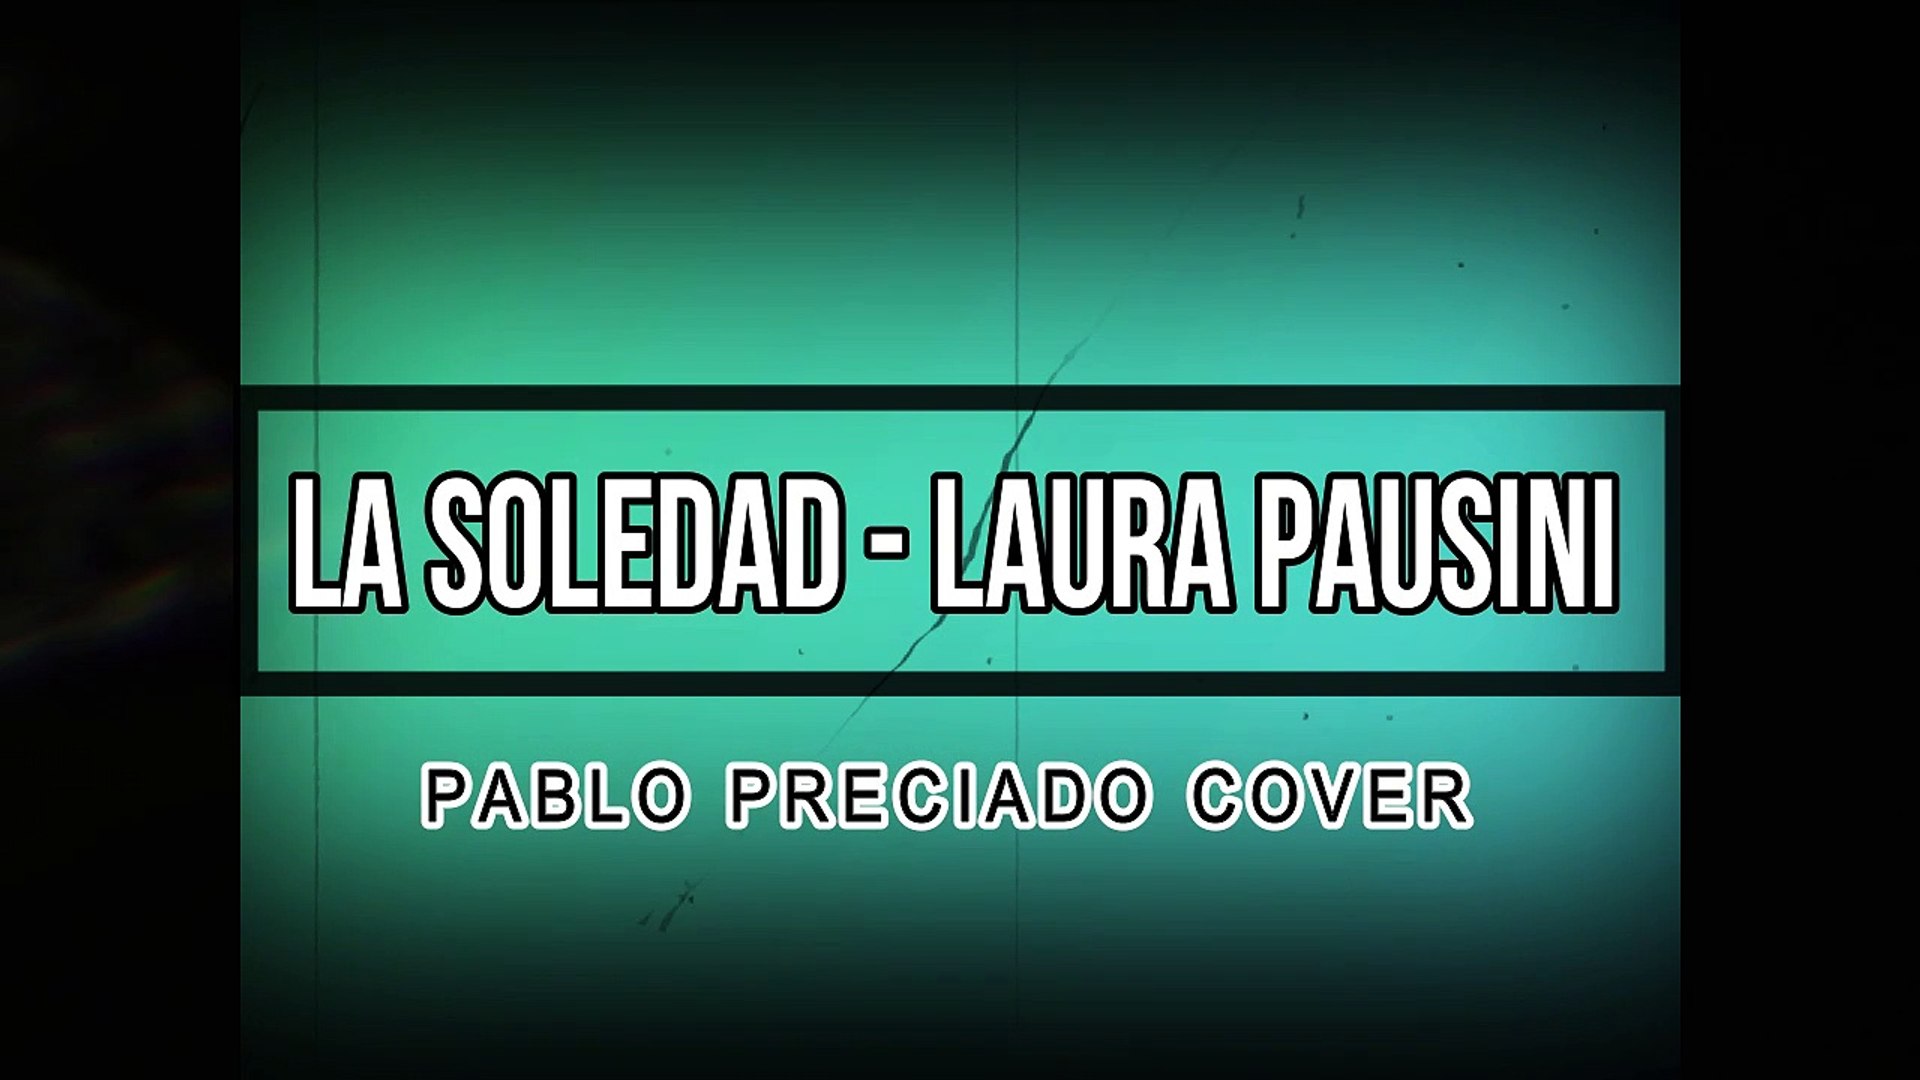 La Soledad - Laura Pausini - Cover Pablo Preciado (Letra) - Vídeo  Dailymotion